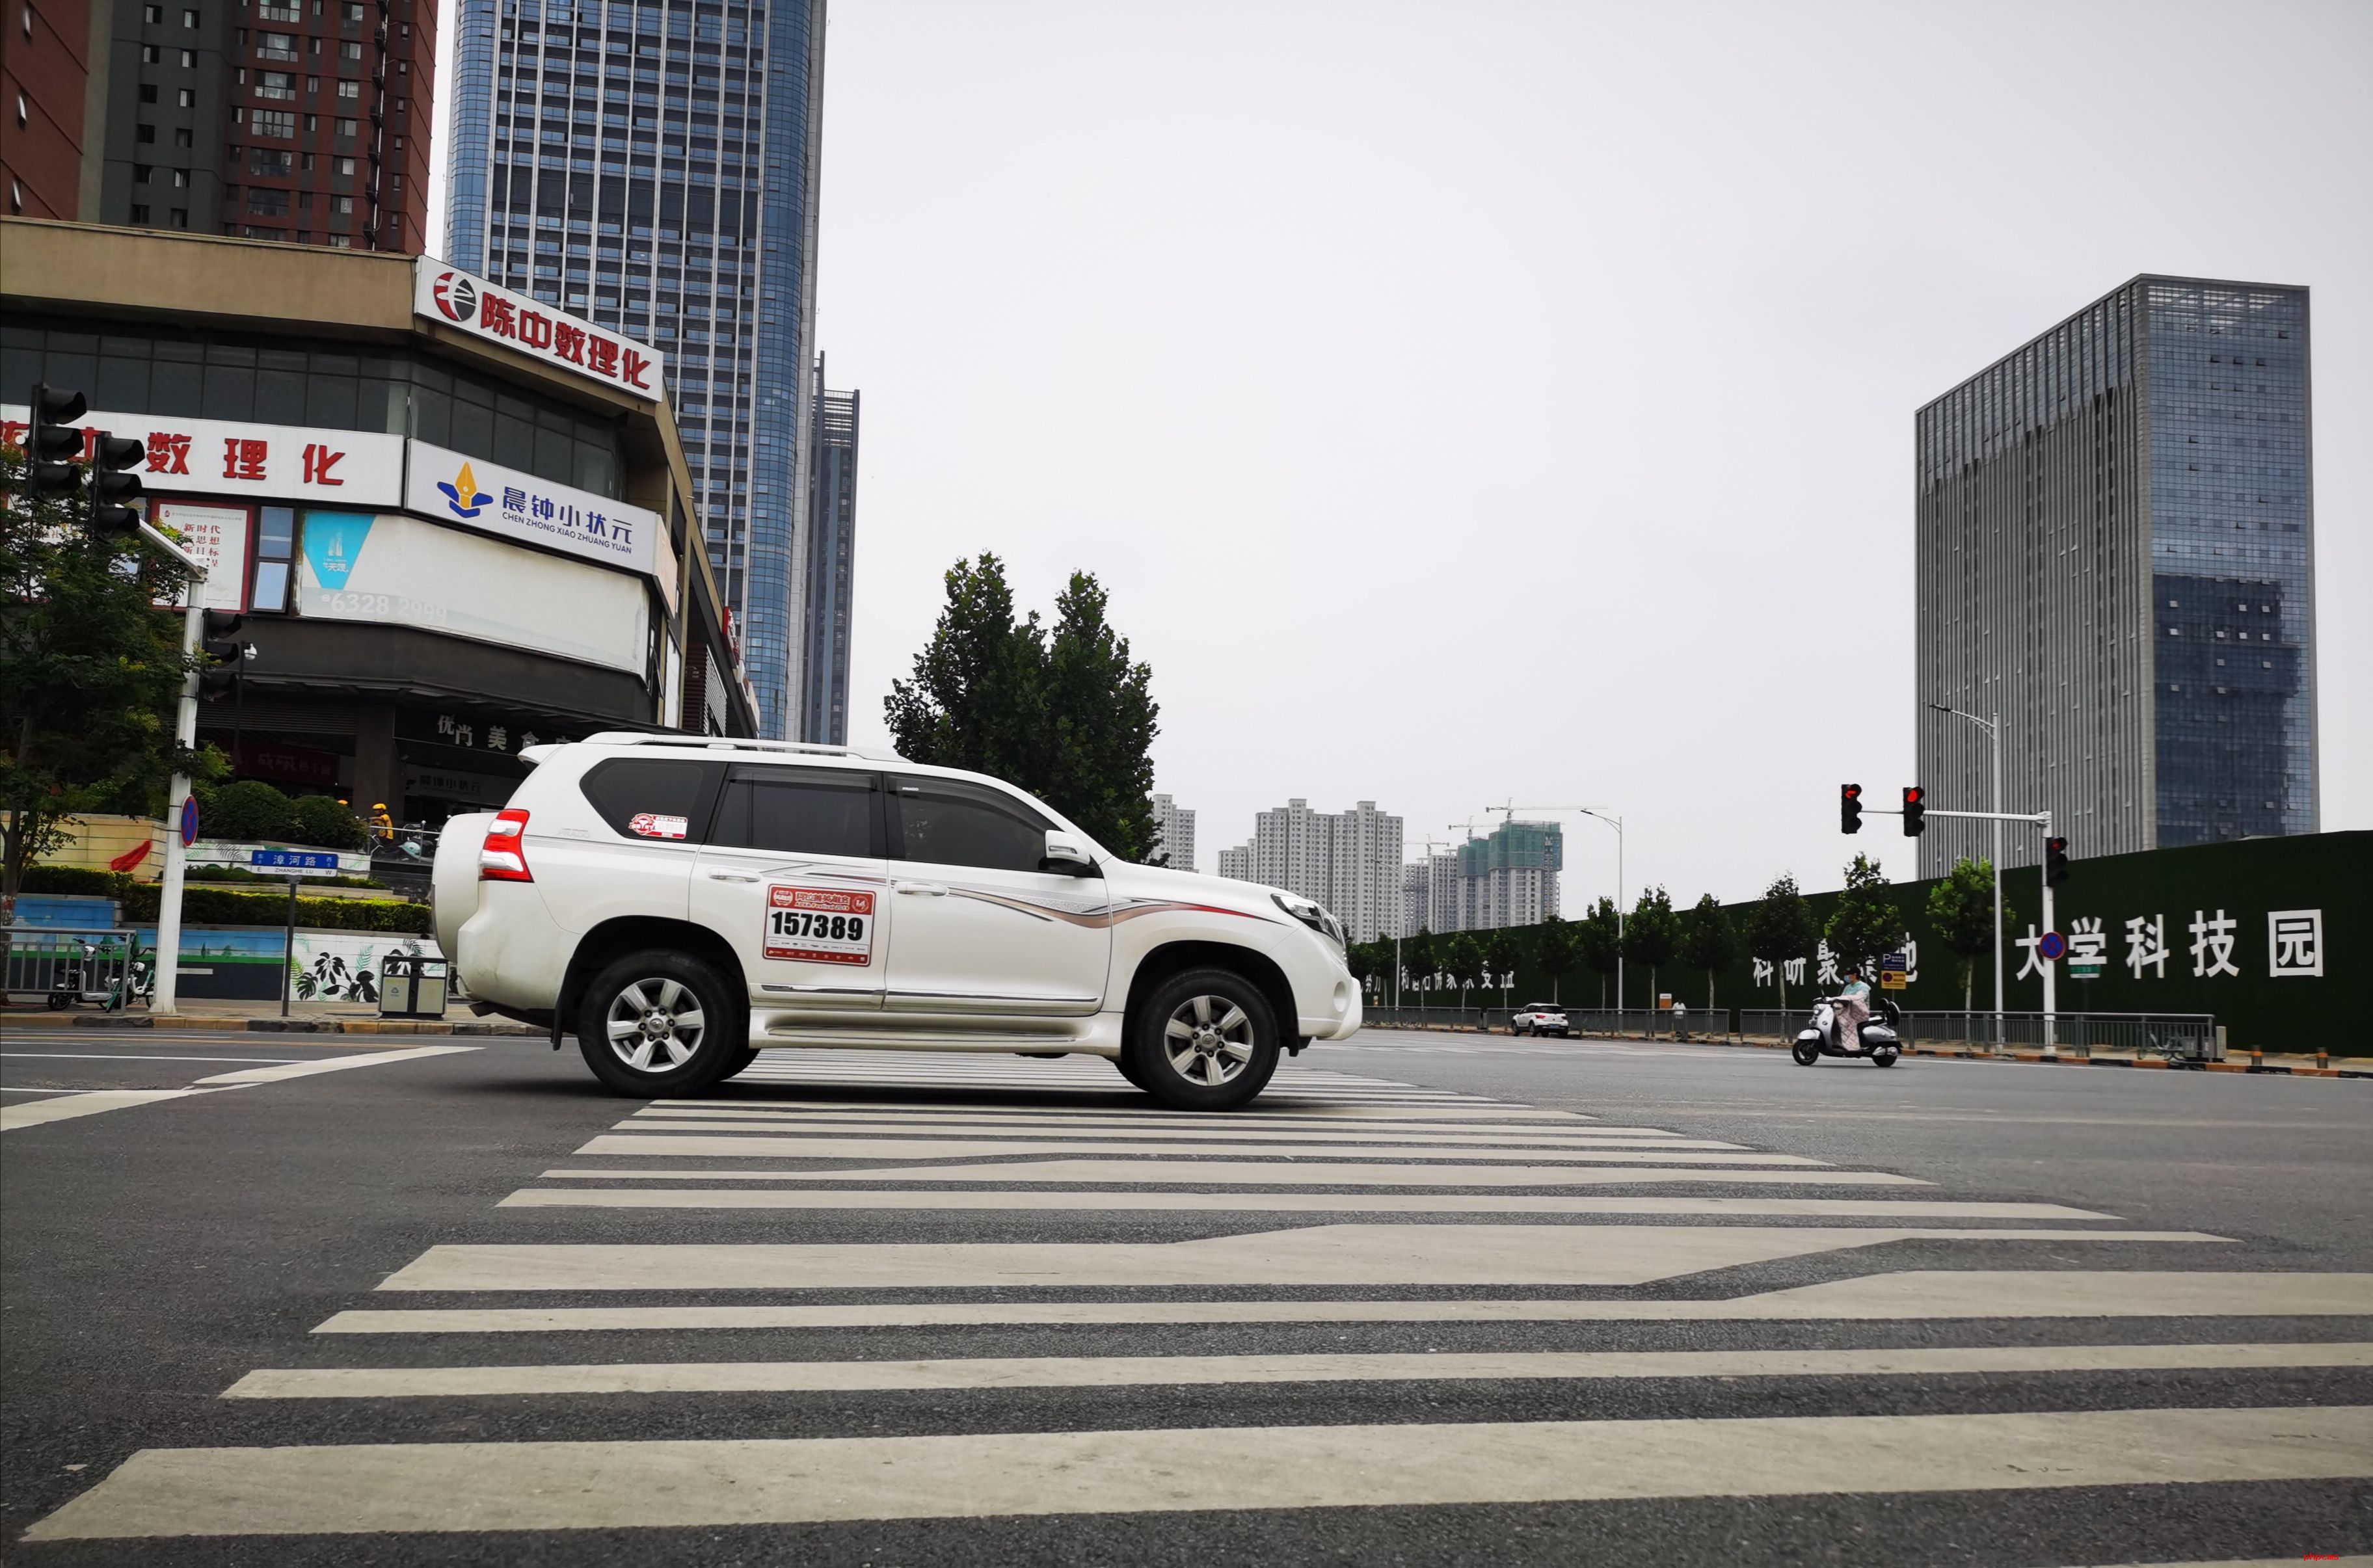 新一代丰田皇冠将放弃纯燃油方案 预计于今年7月15日正式发布